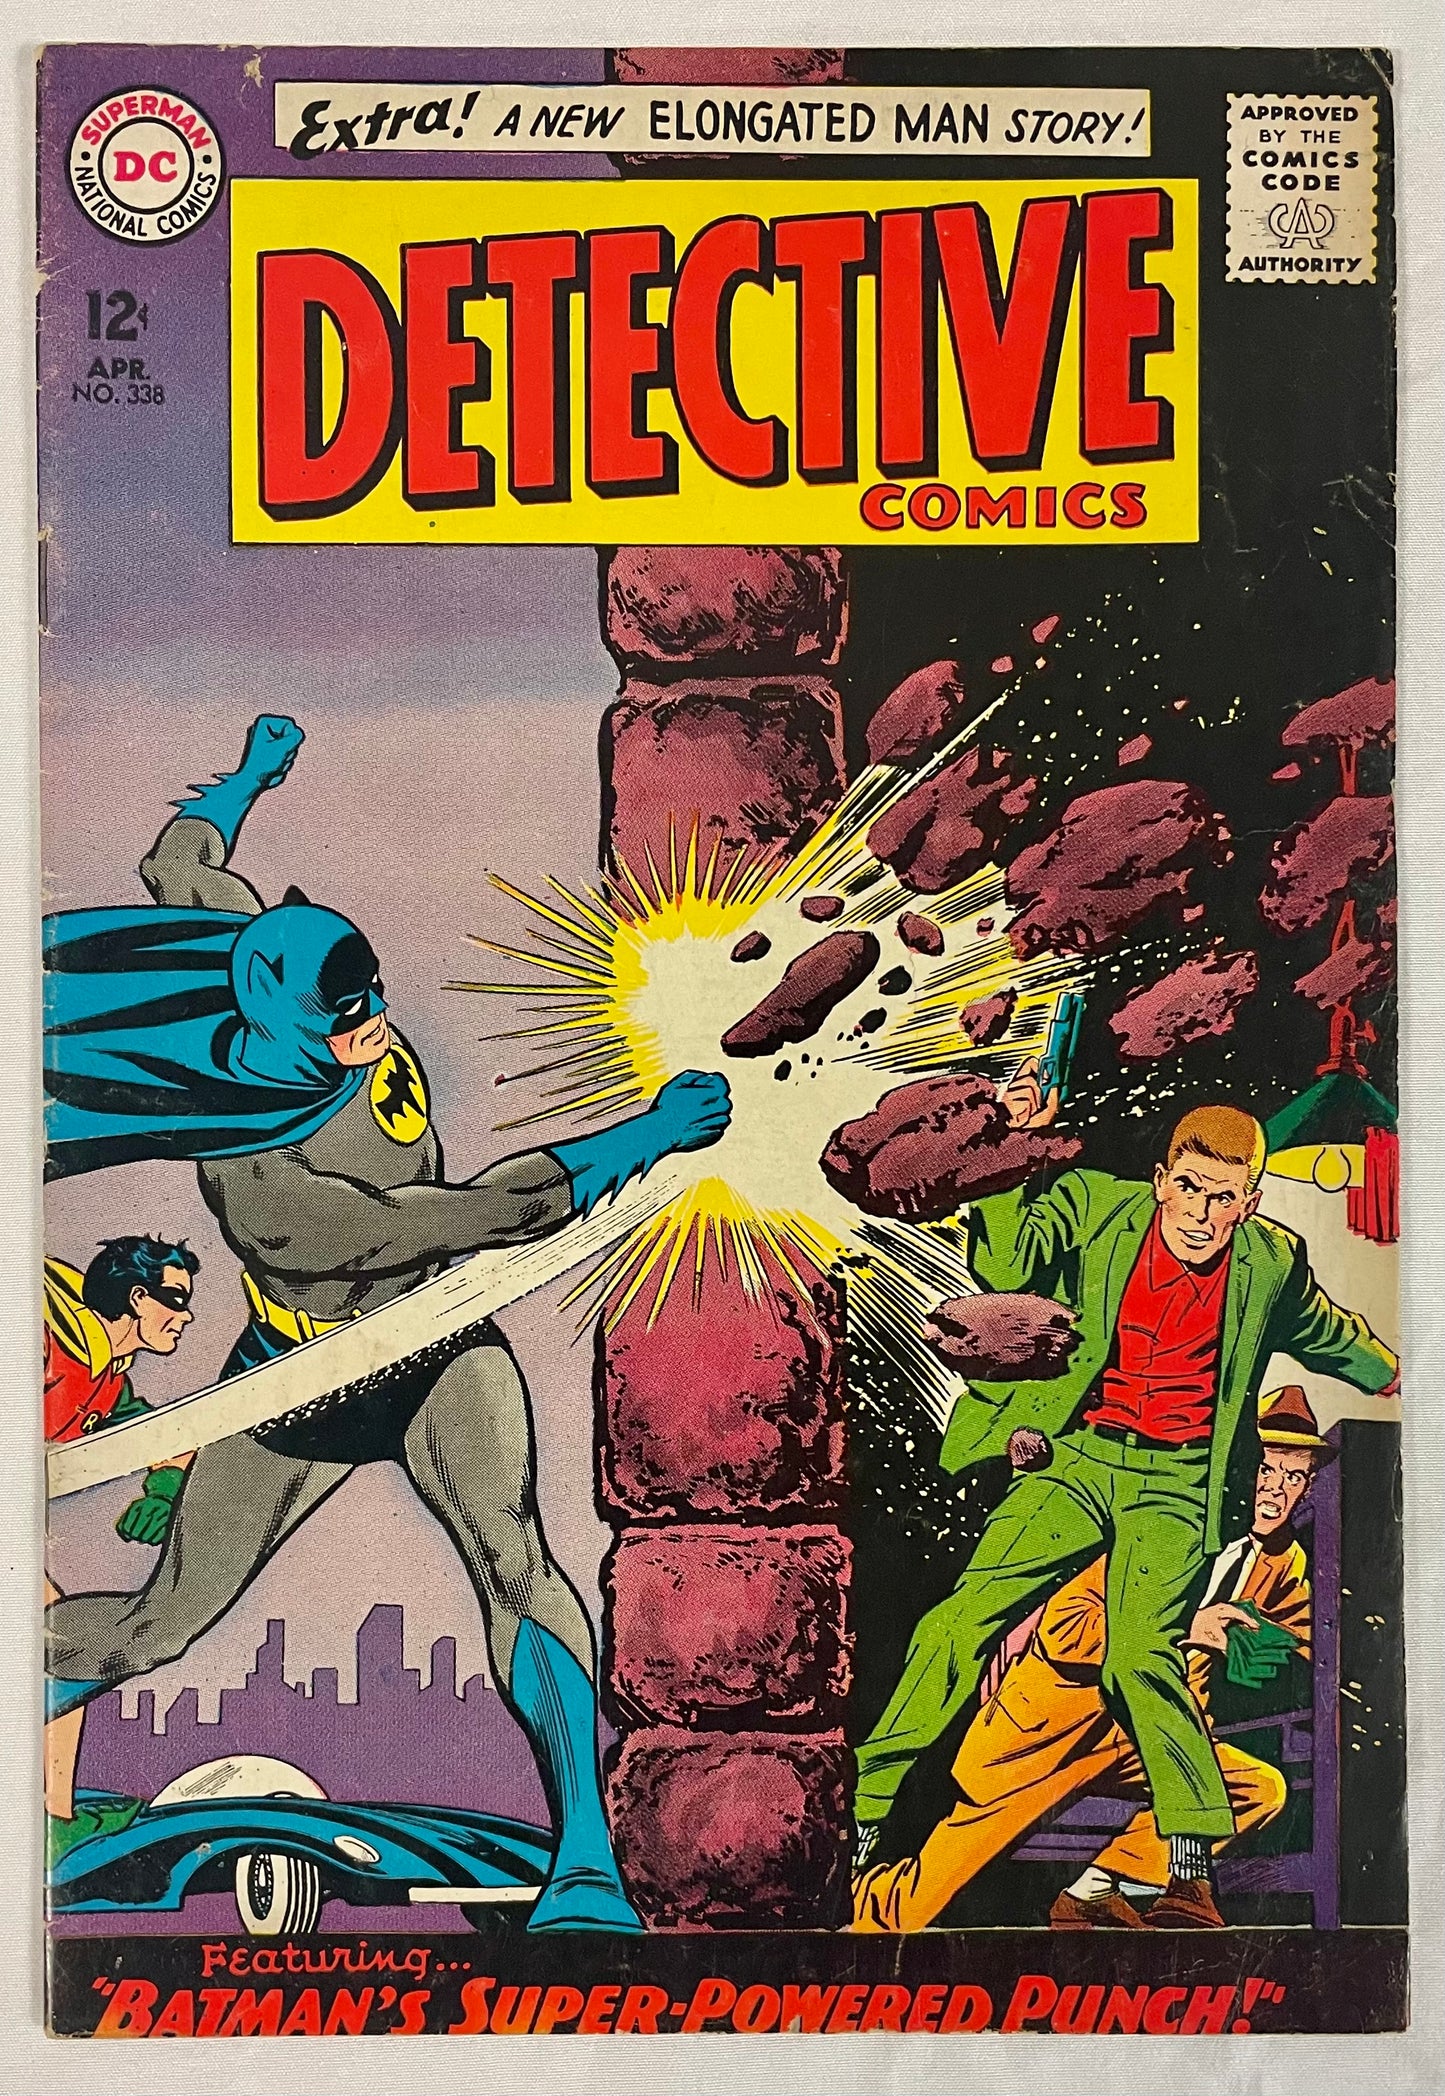 DC Comics Detective Comics No. 338